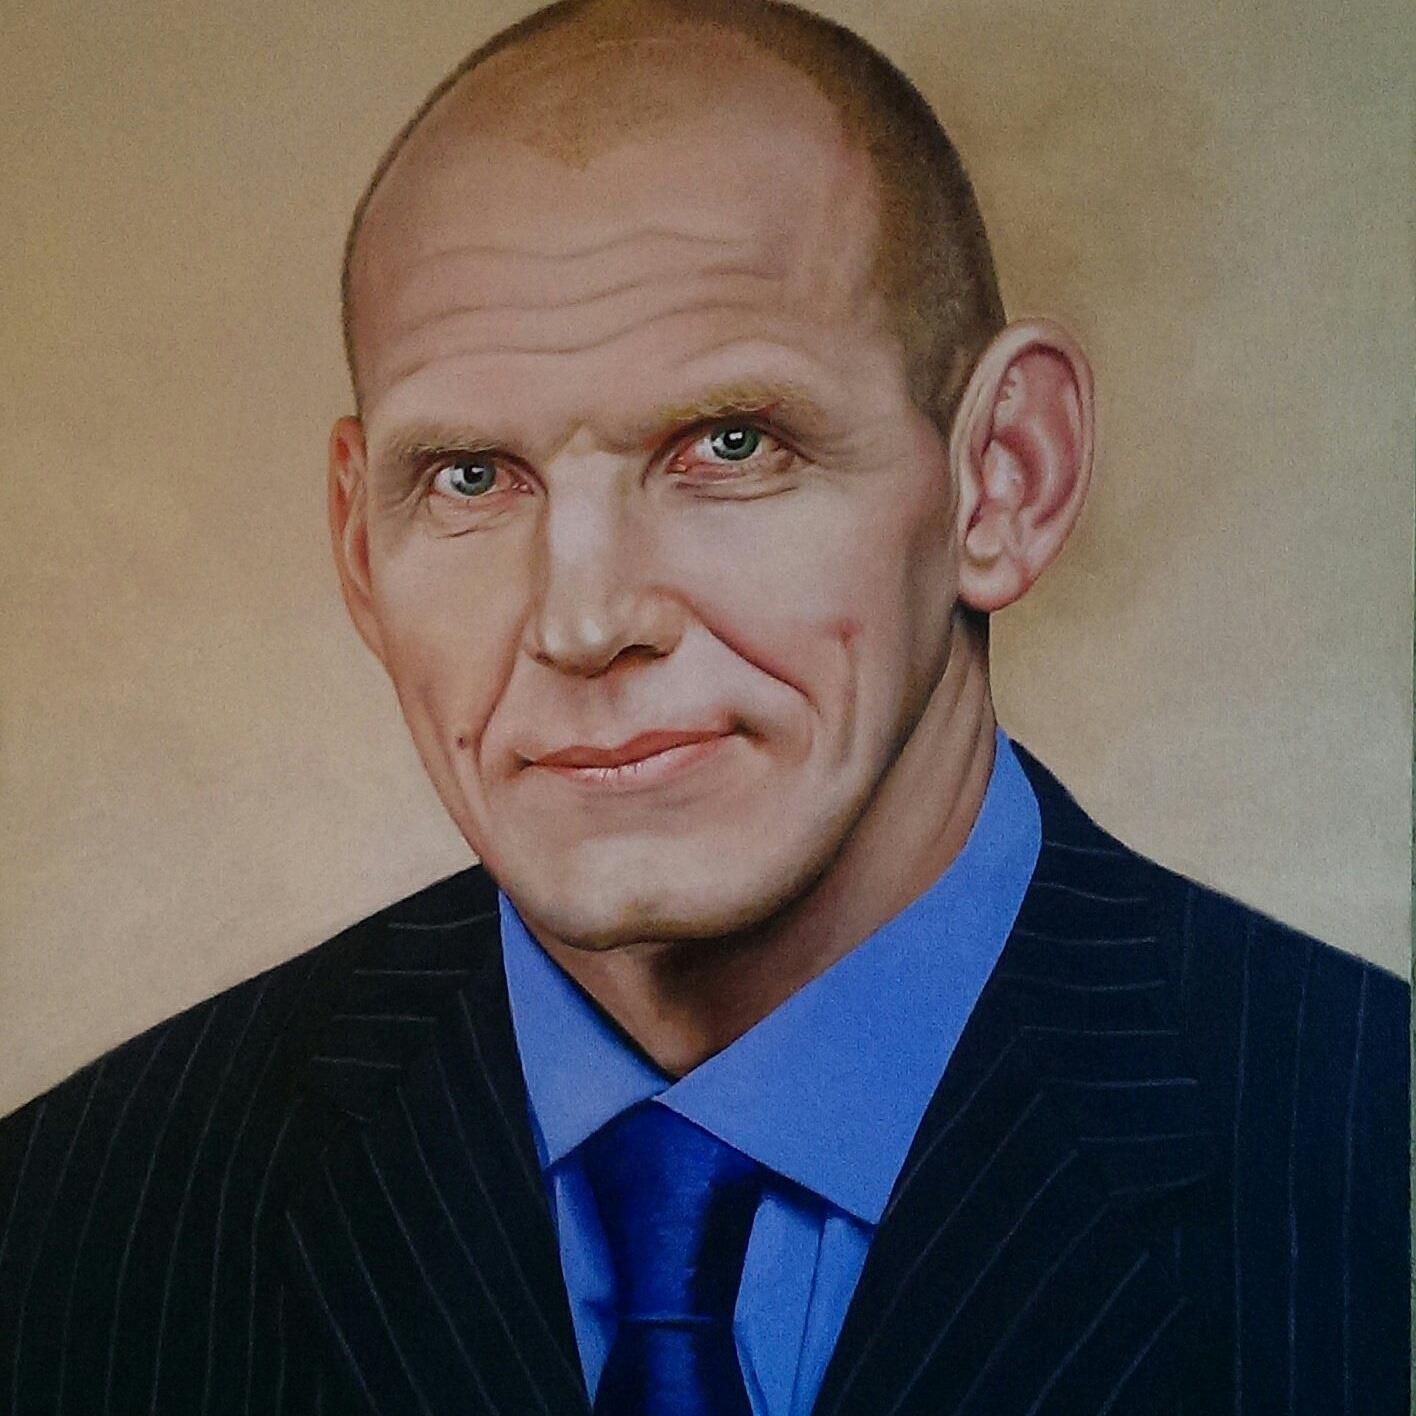 Фото Художница из Новосибирска продаёт портрет Путина за 25 тысяч рублей 3